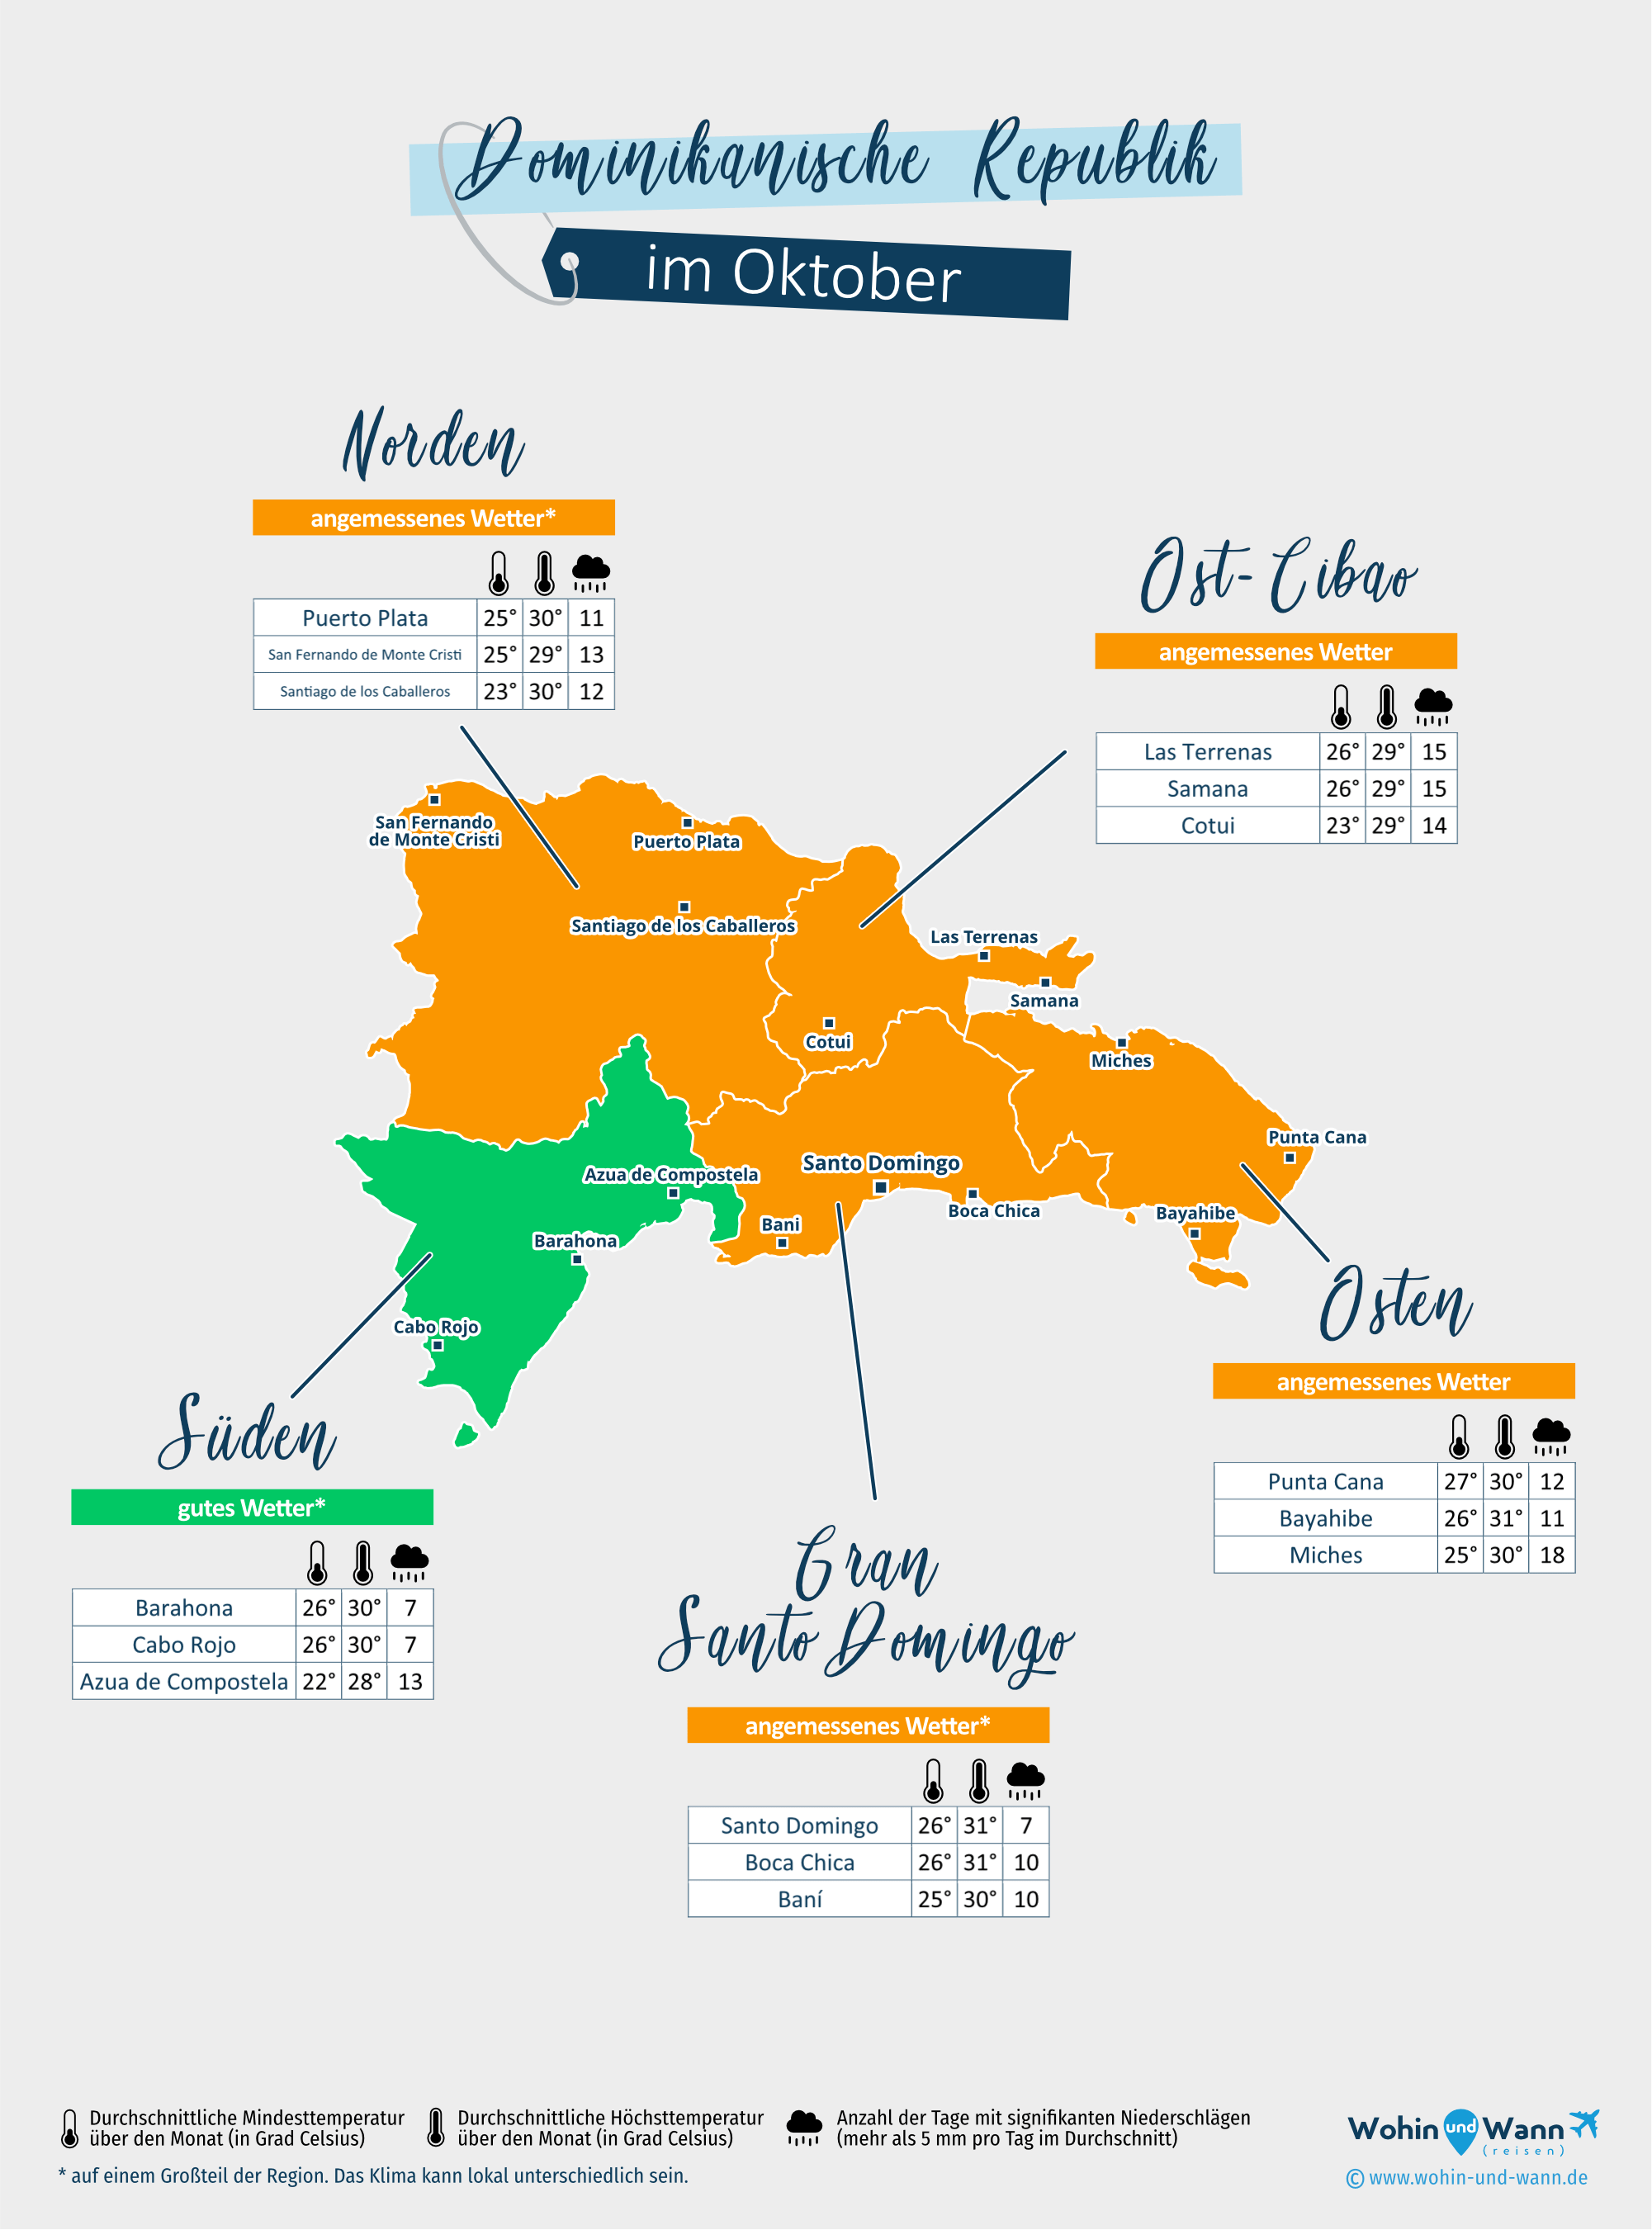 Dominikanische Republik: Wetterkarte im Oktober in verschiedenen Regionen